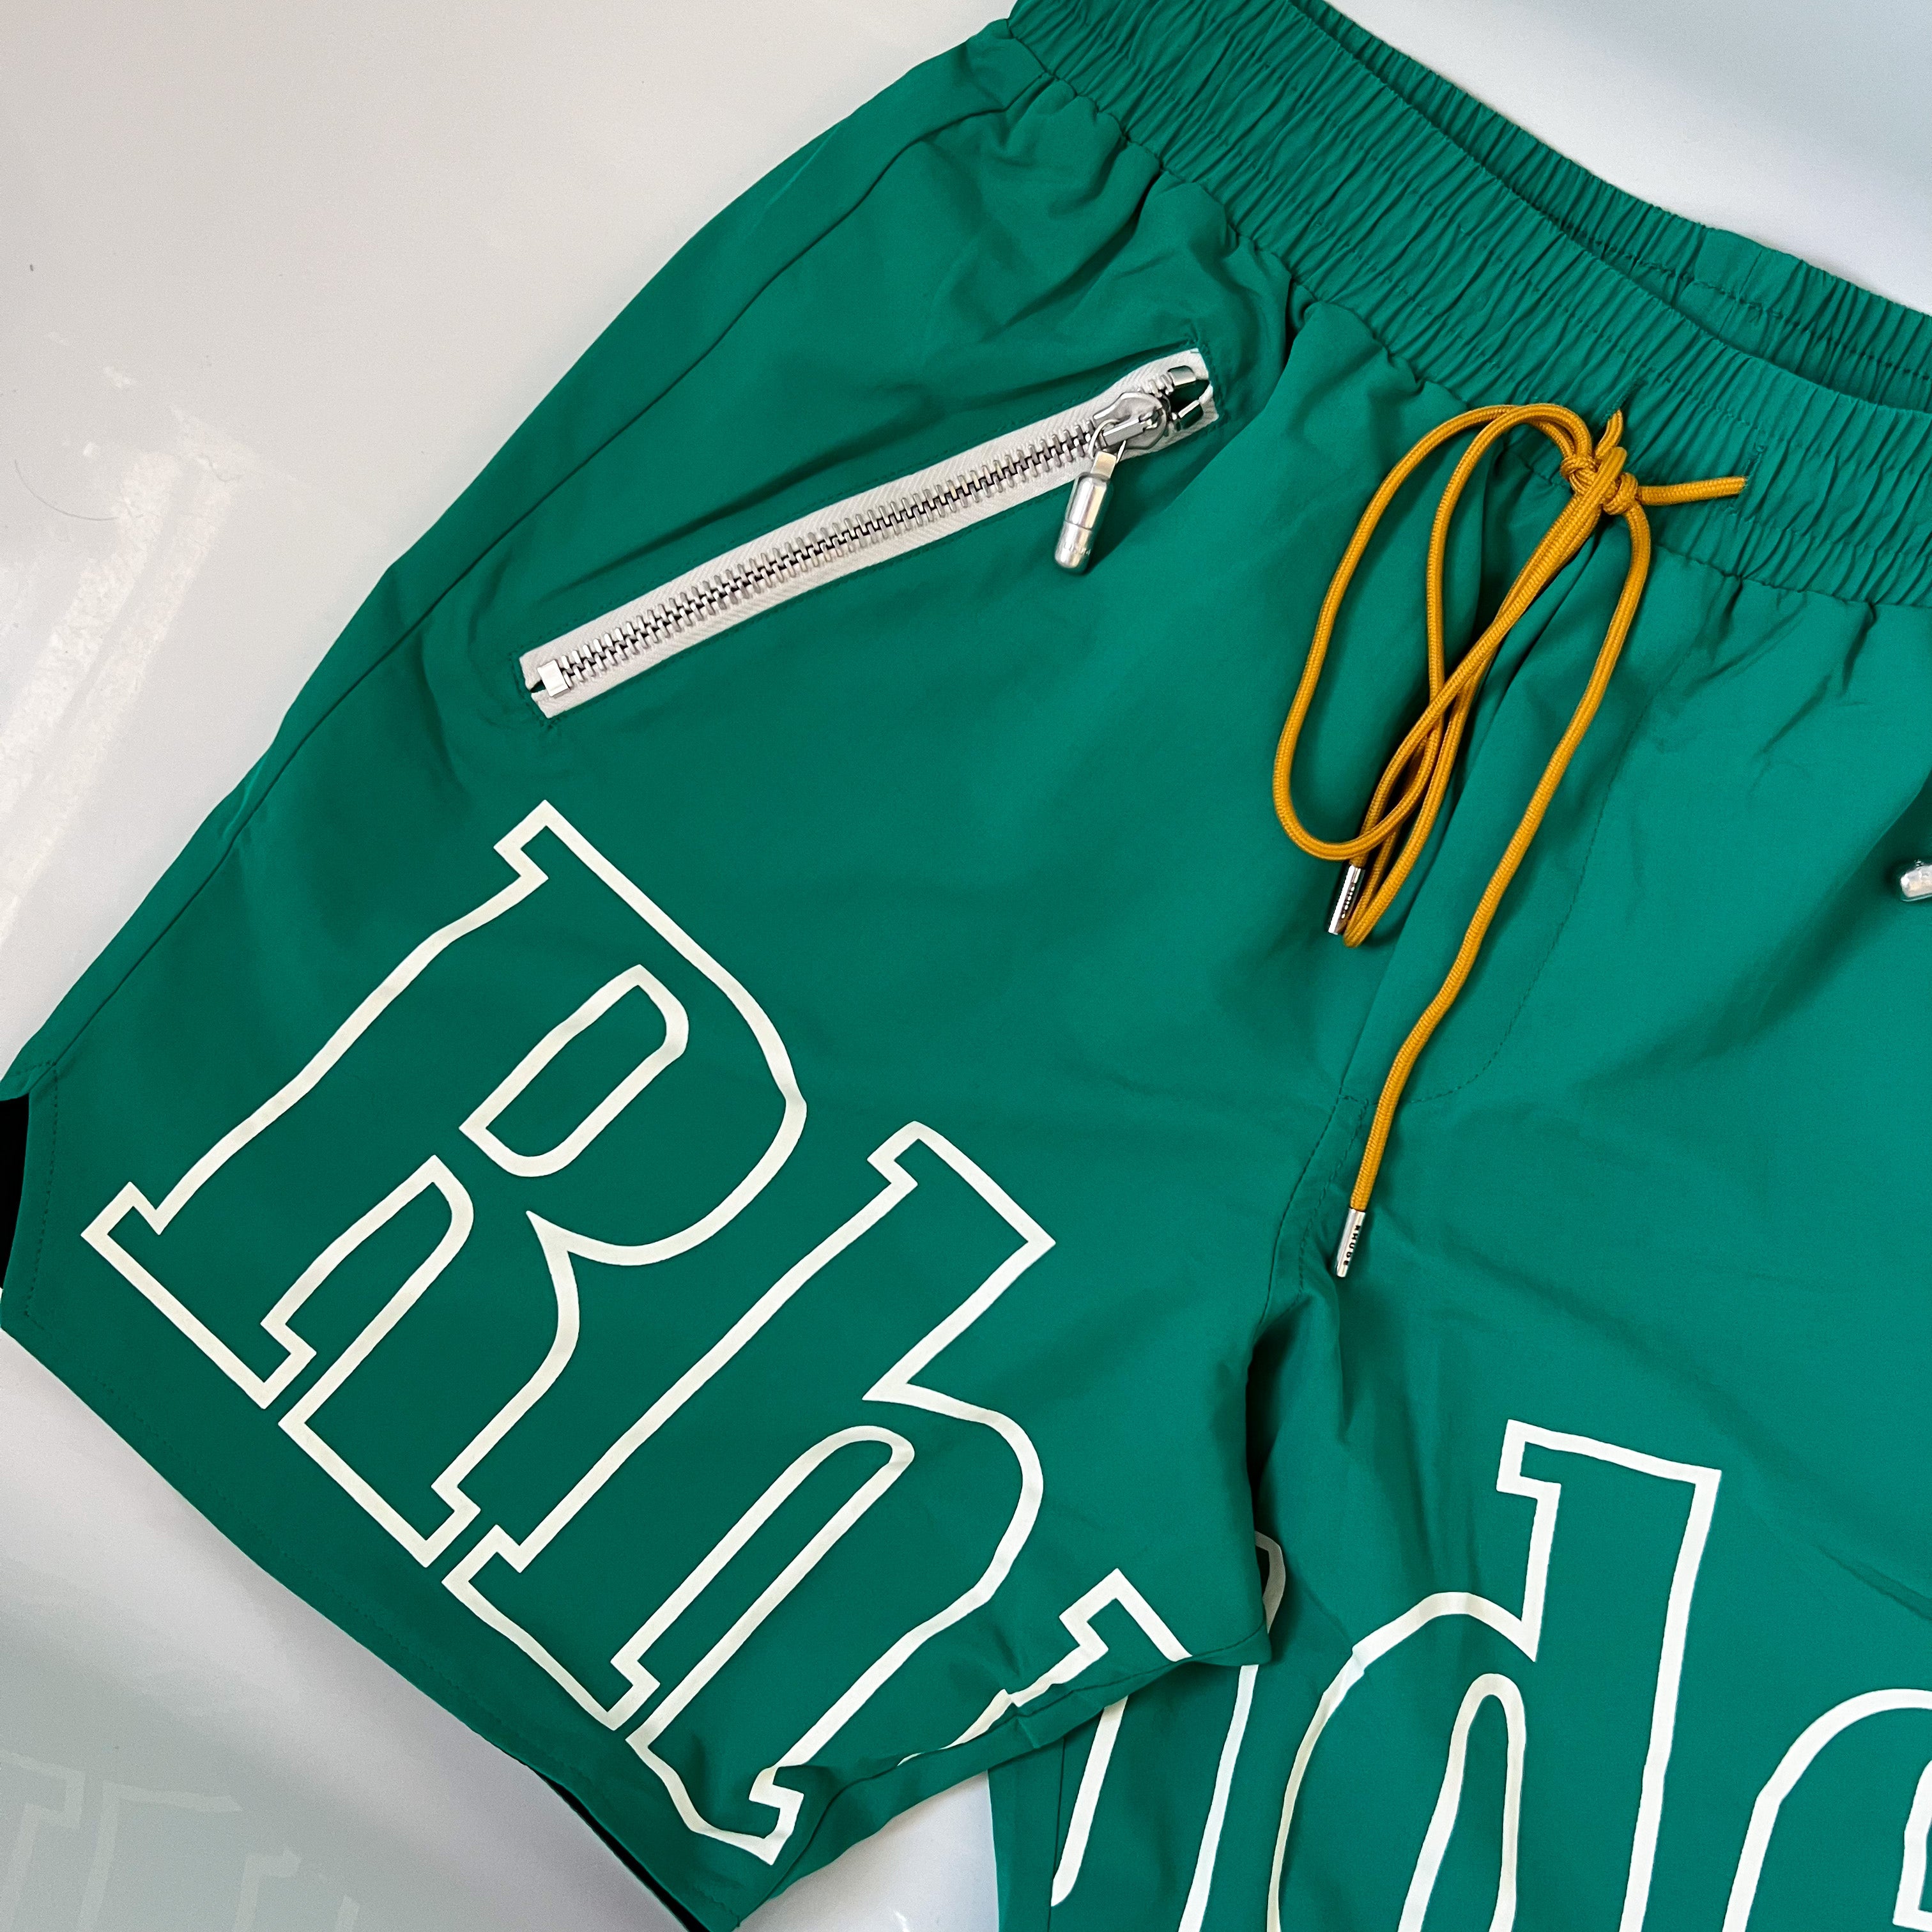 Rhude Outline Swimshorts - Green